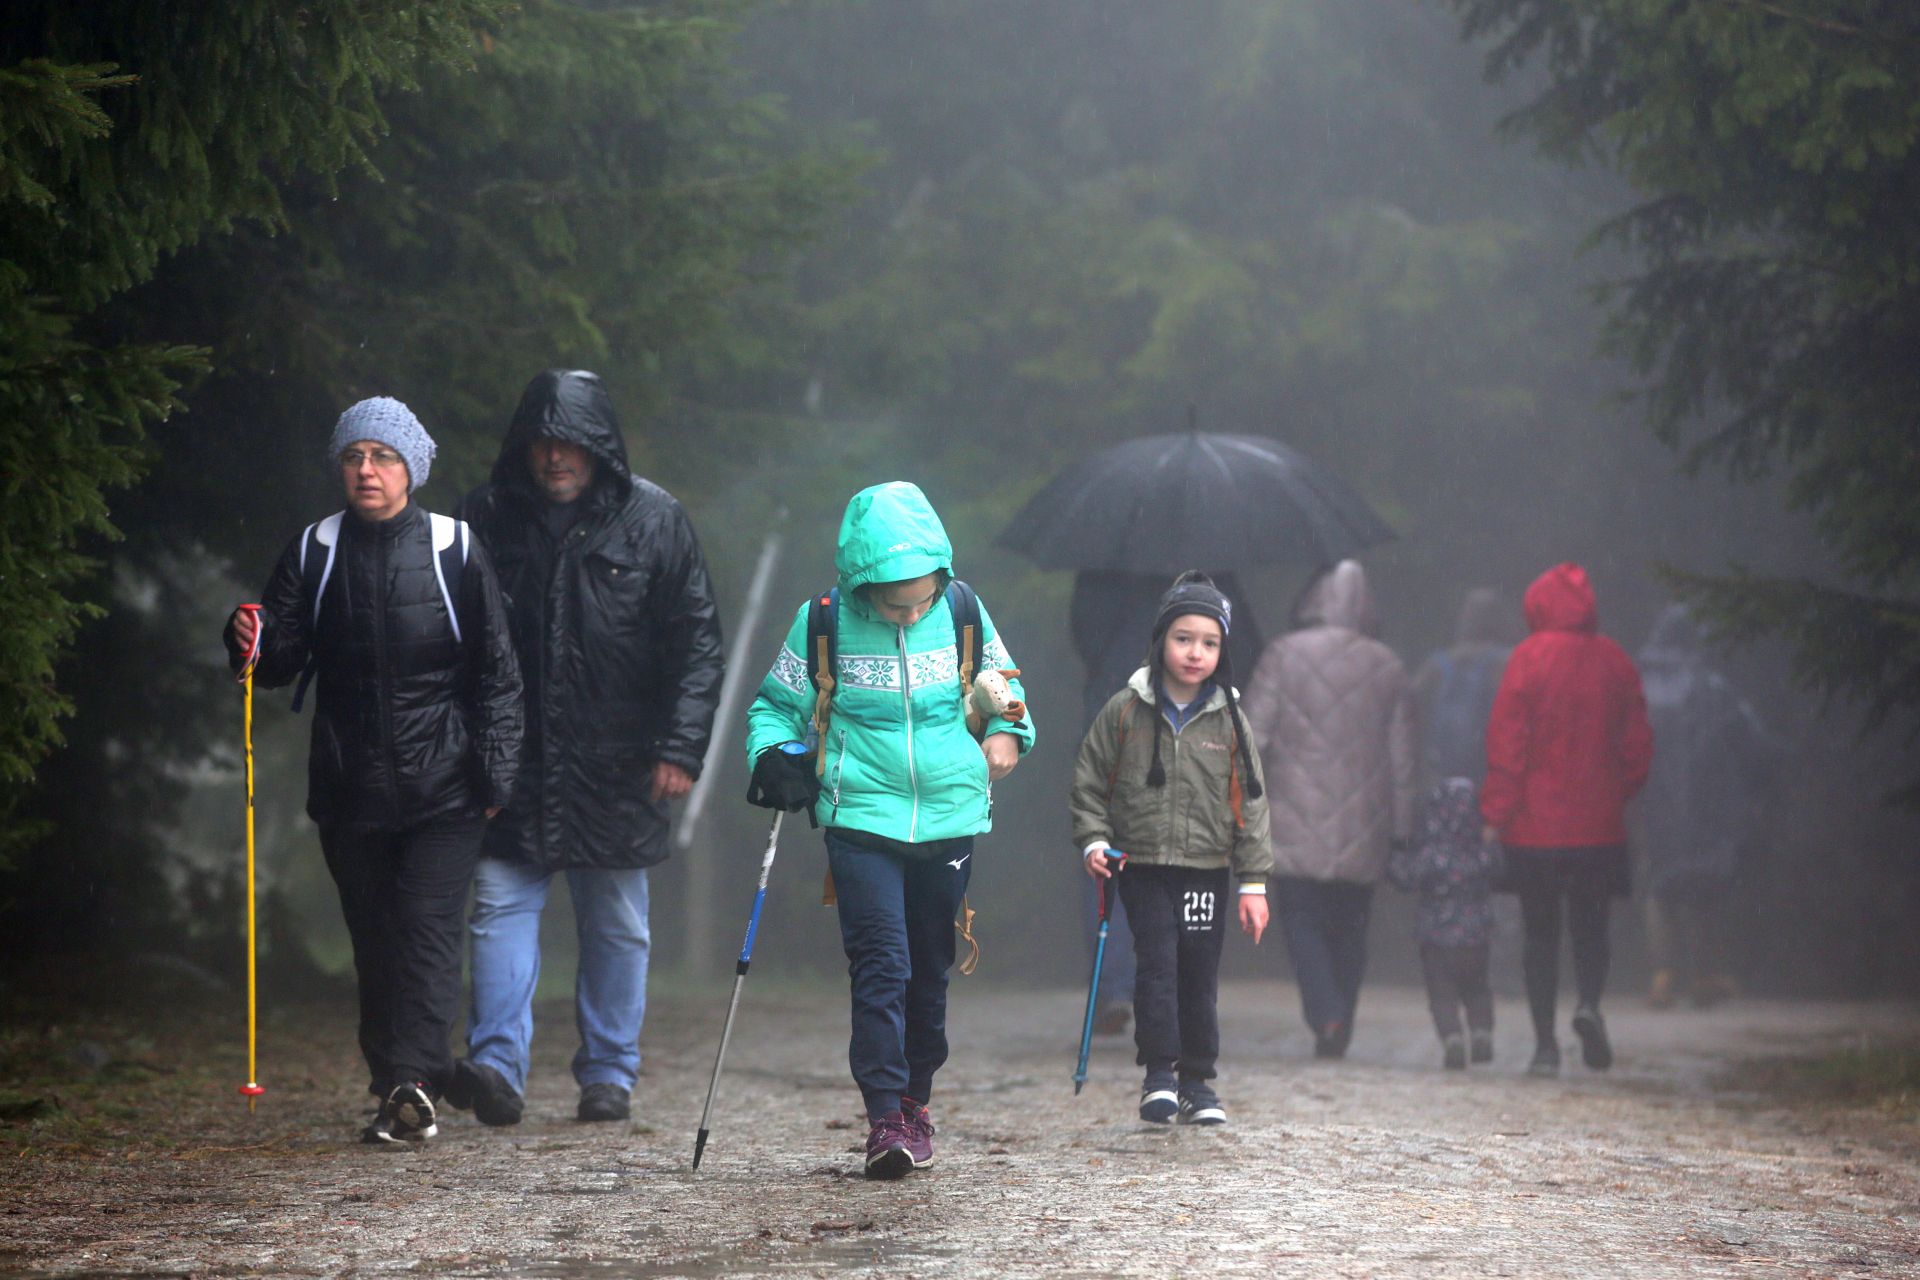 Въпреки дъждовното и мъгливо време мнозина се възползваха от възможността да изкарат част от неделния ден в планината